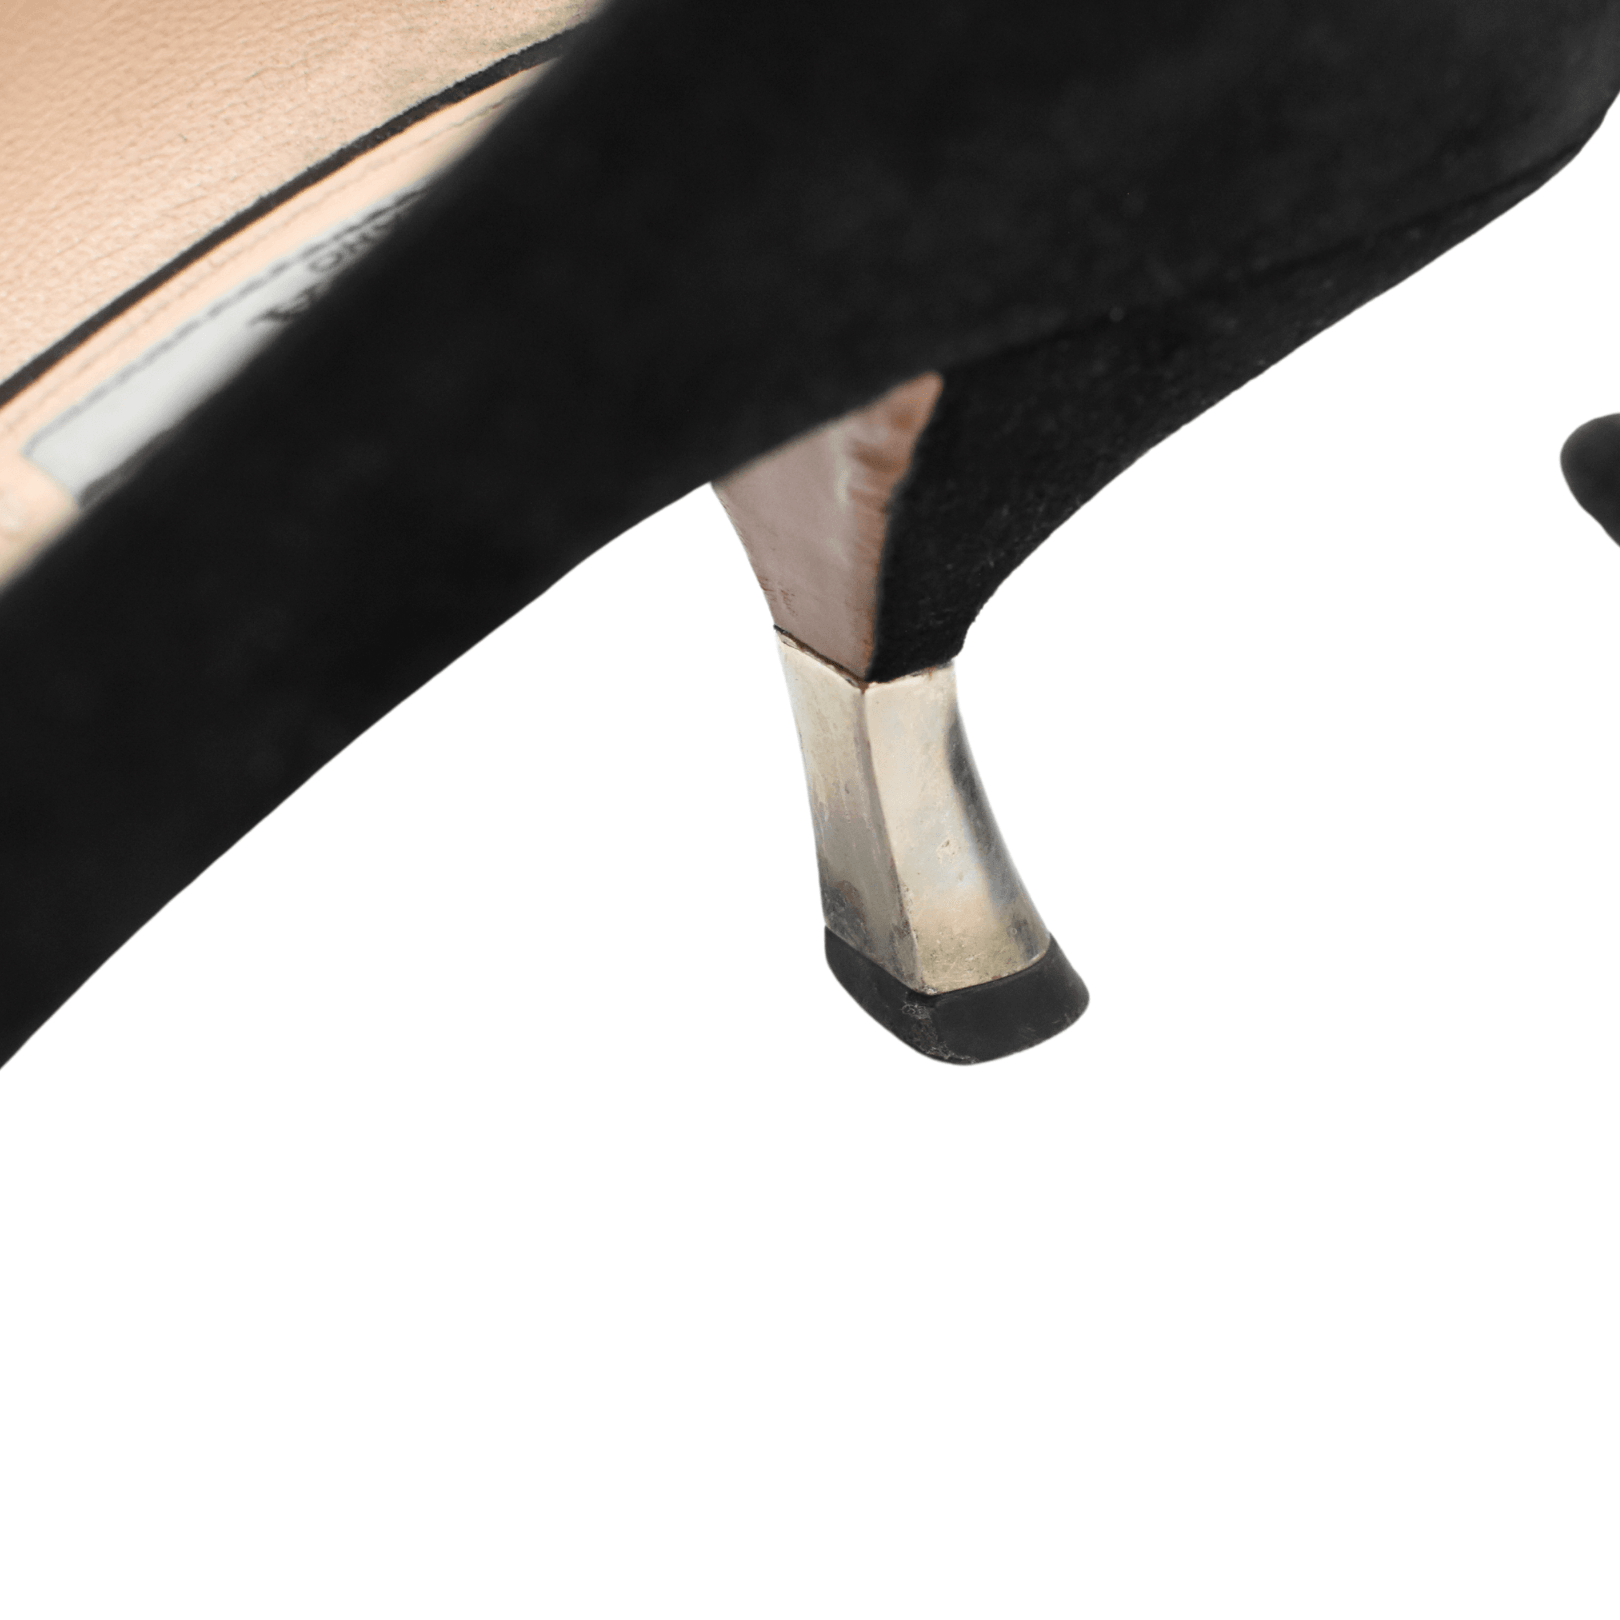 Prada Kitten Heels - Women's 35.5 - Fashionably Yours